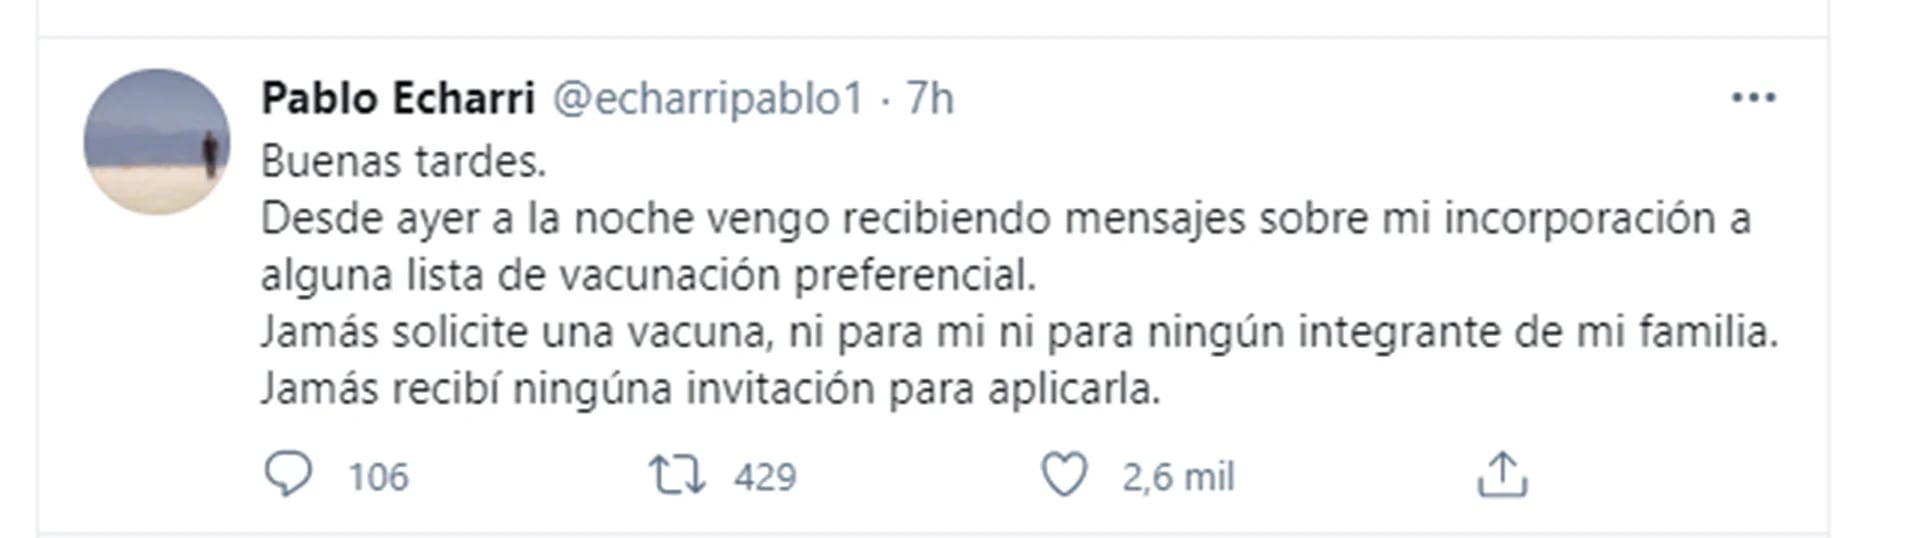 Pablo Echarri desmintió haber sido vacunado (Foto: Twitter)